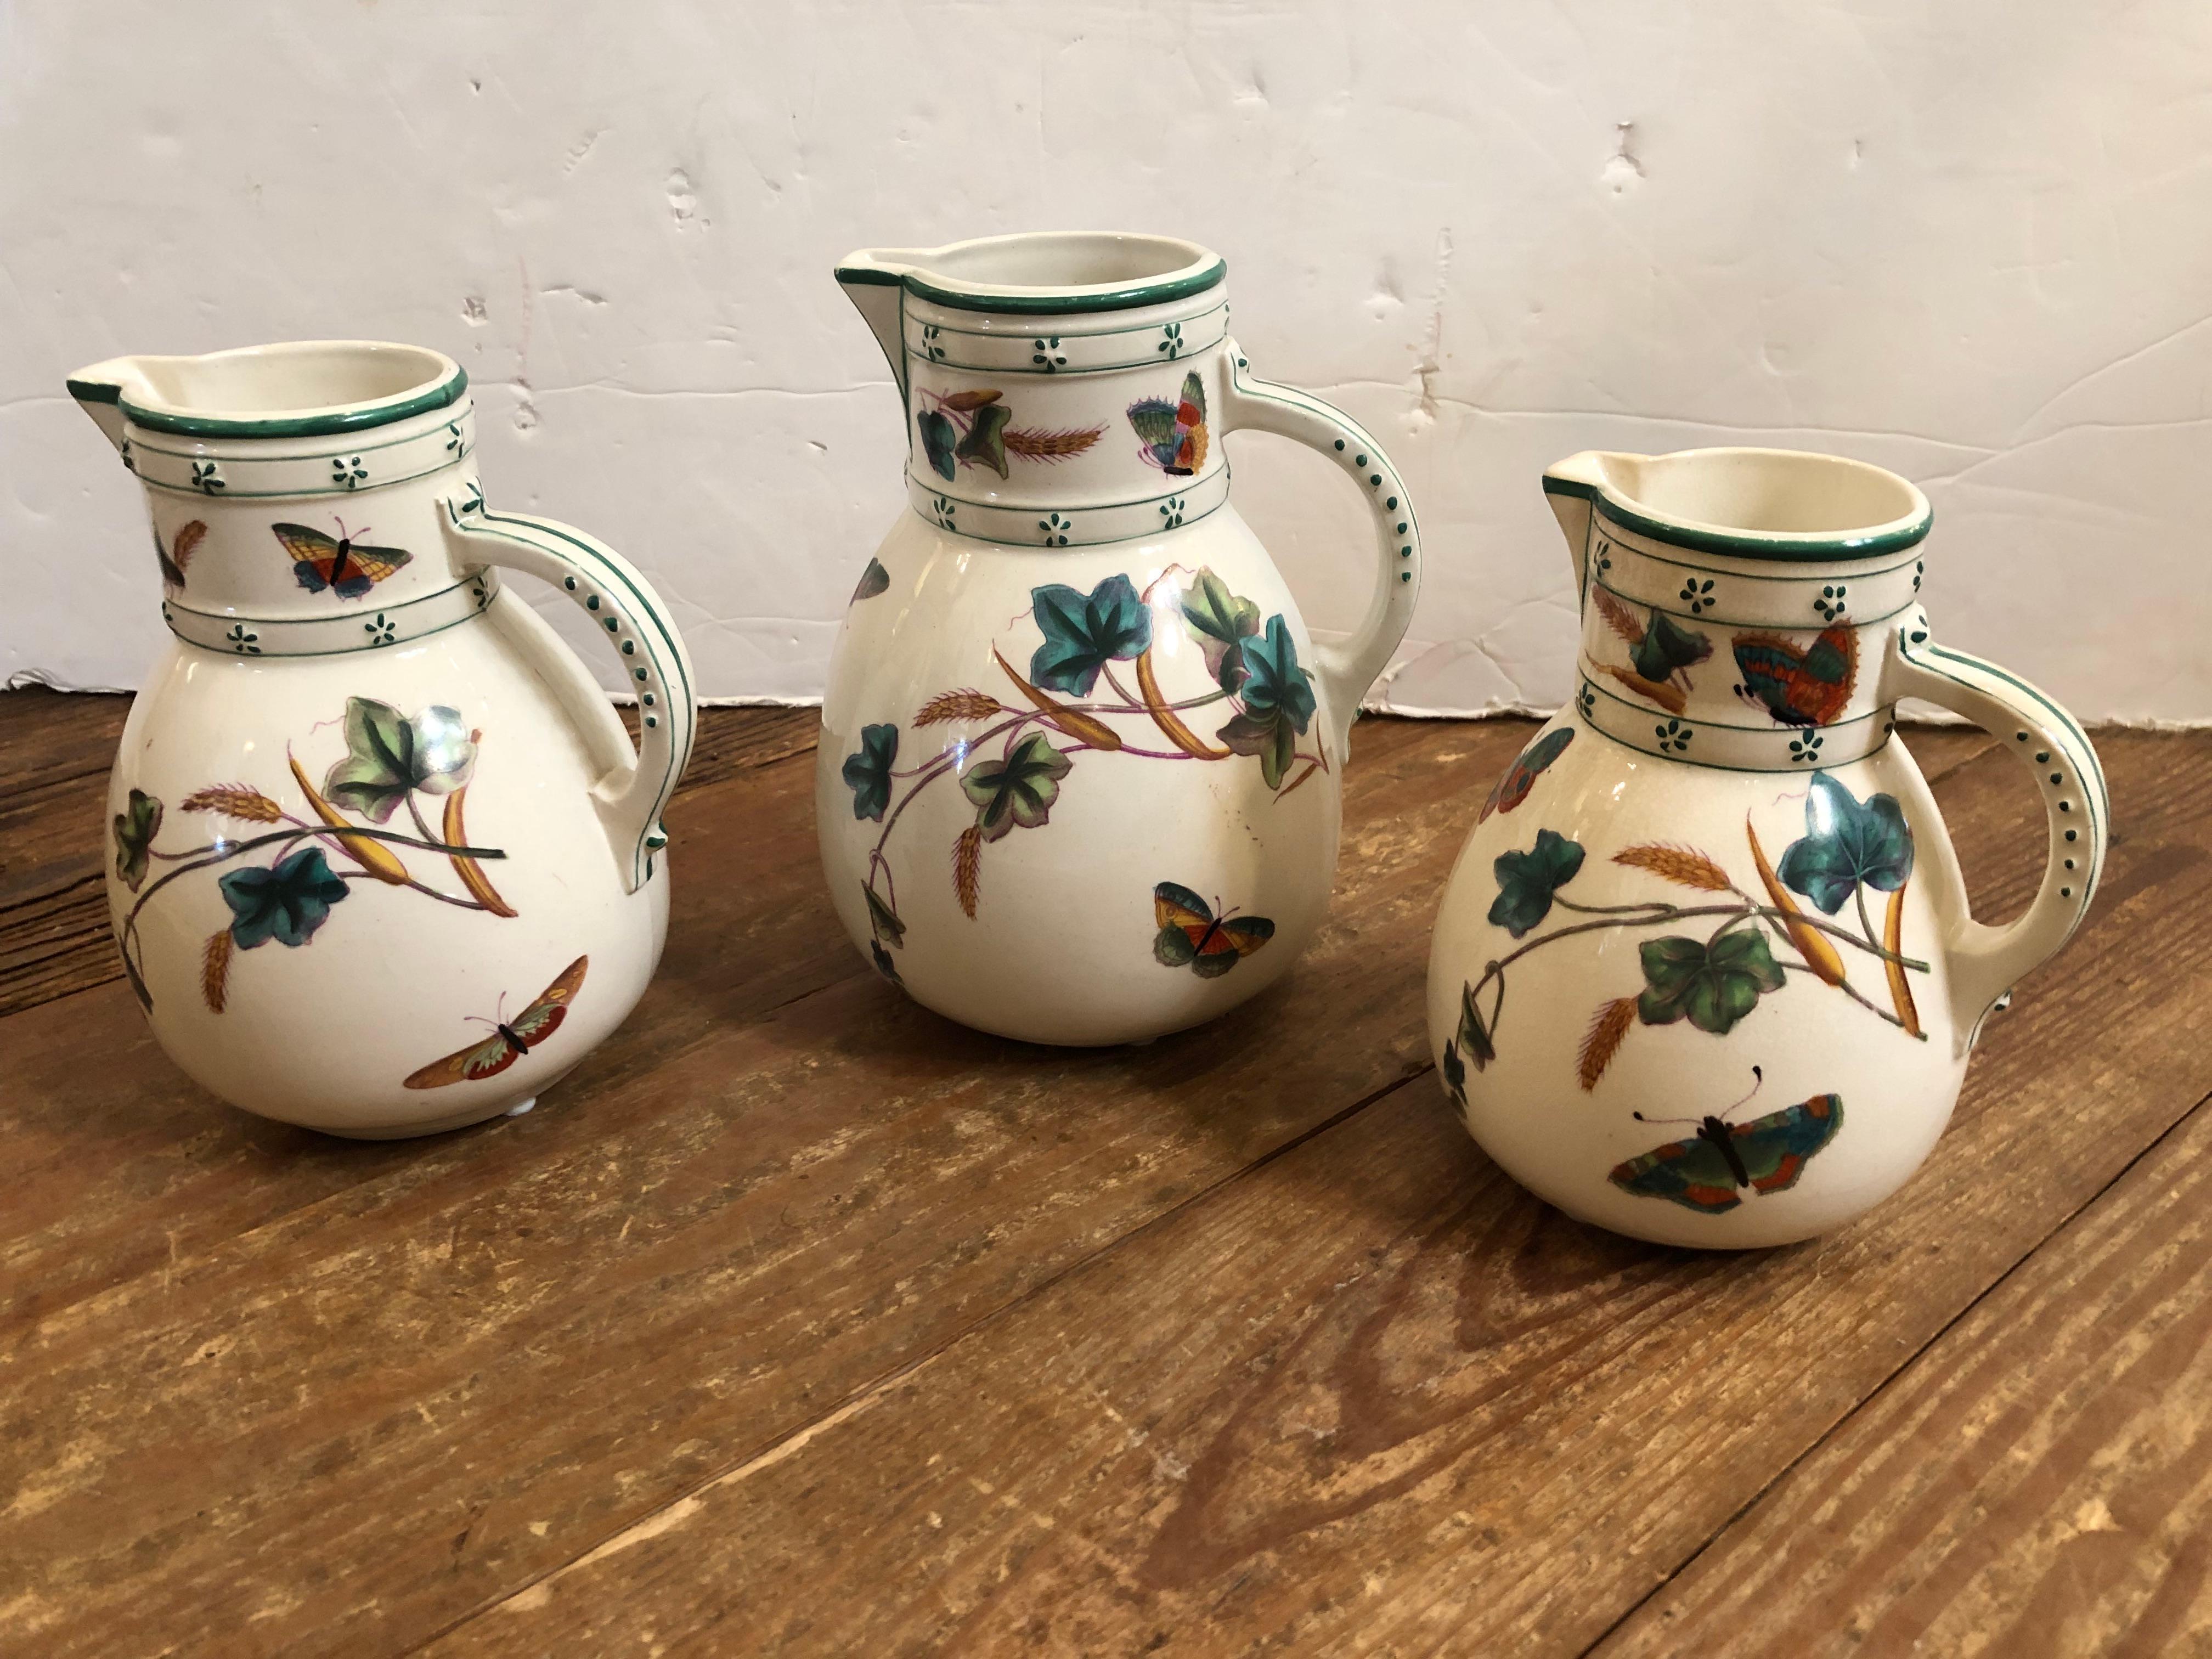 Hübsche Sammlung von 3 antiken englischen Porzellankrügen in verschiedenen Größen mit wunderschönen handgemalten Schmetterlingen und Blumen auf weißem Hintergrund.
7,5